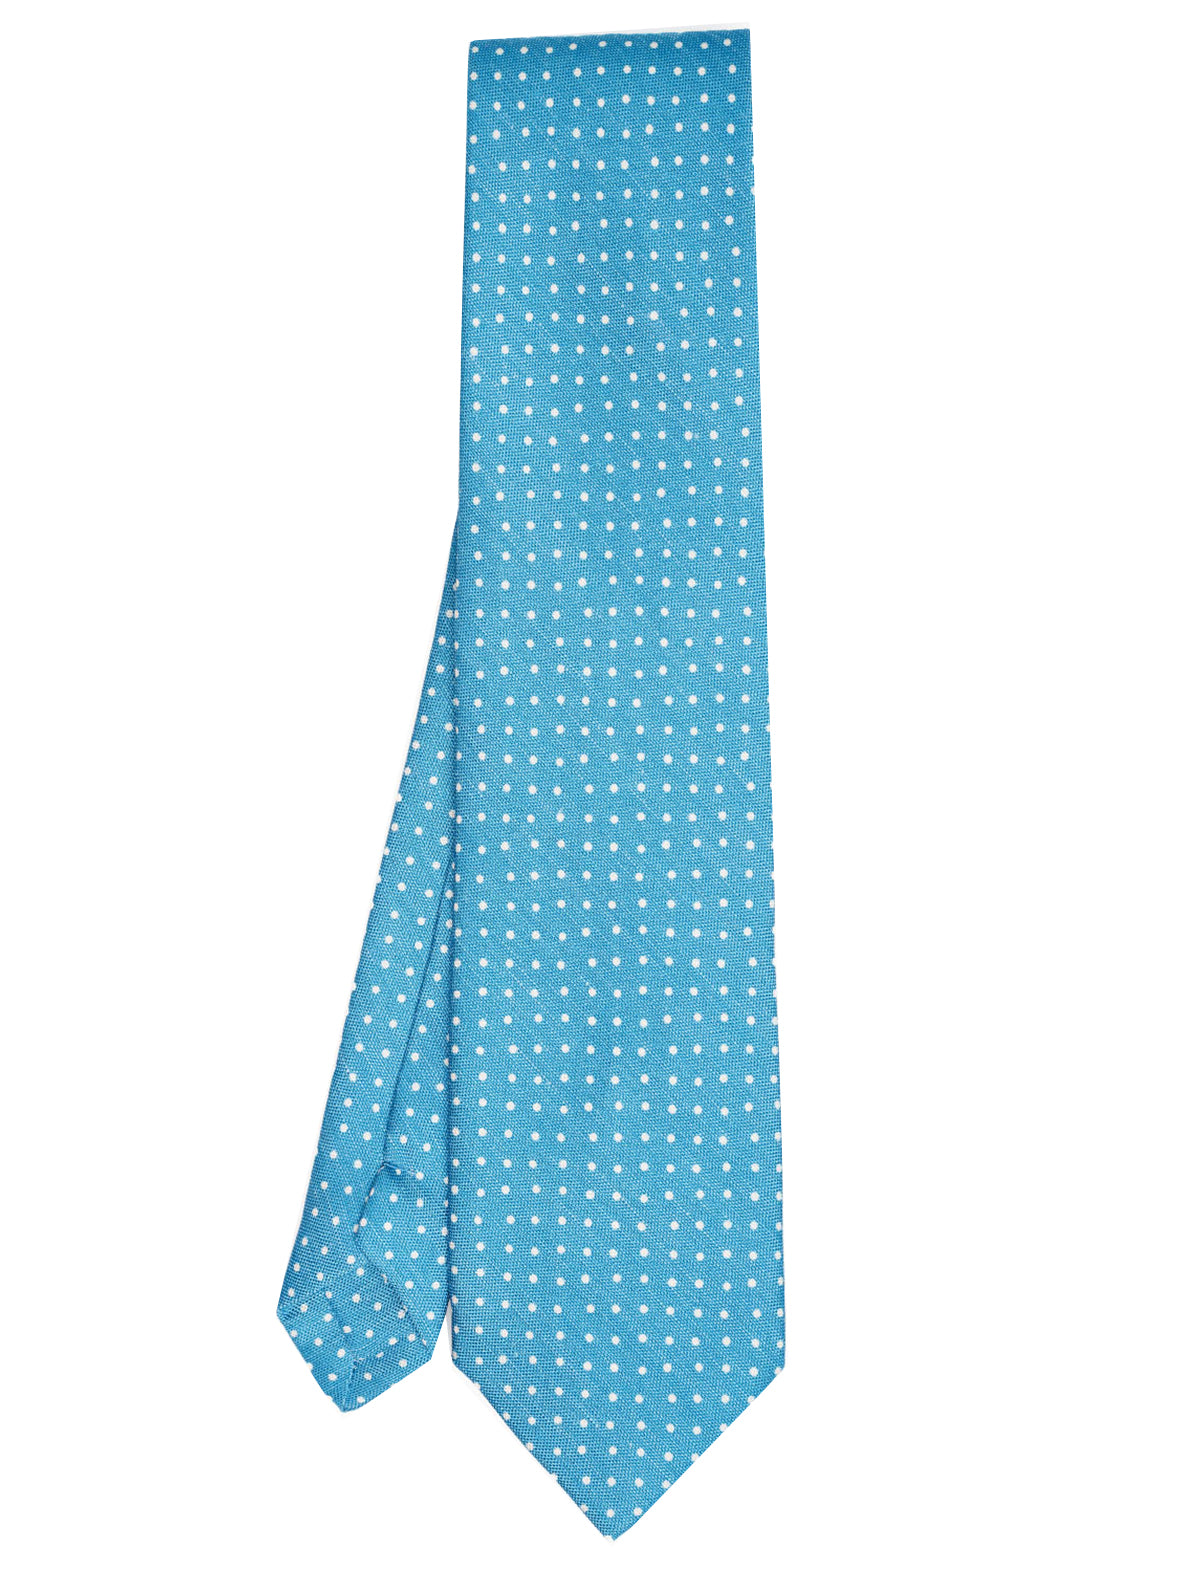 E.Marinella Dotted Linen Tie in Bright Blue